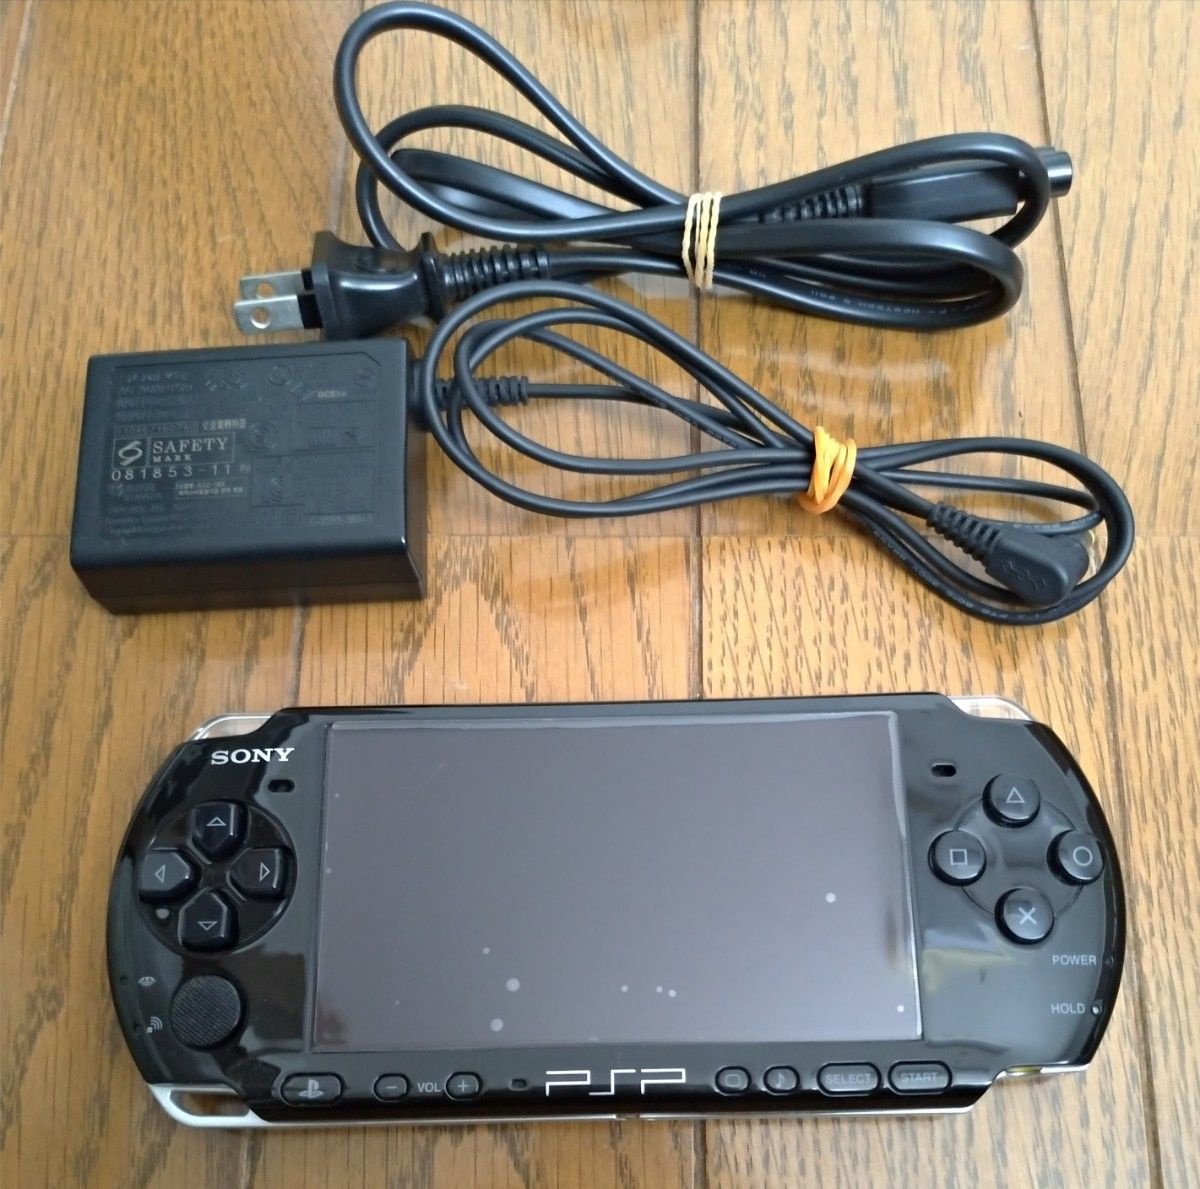 PSP-3000 ピアノブラック 中古品 不具合なし 傷少なめ 充電器 メモリースティック（4GB）付き